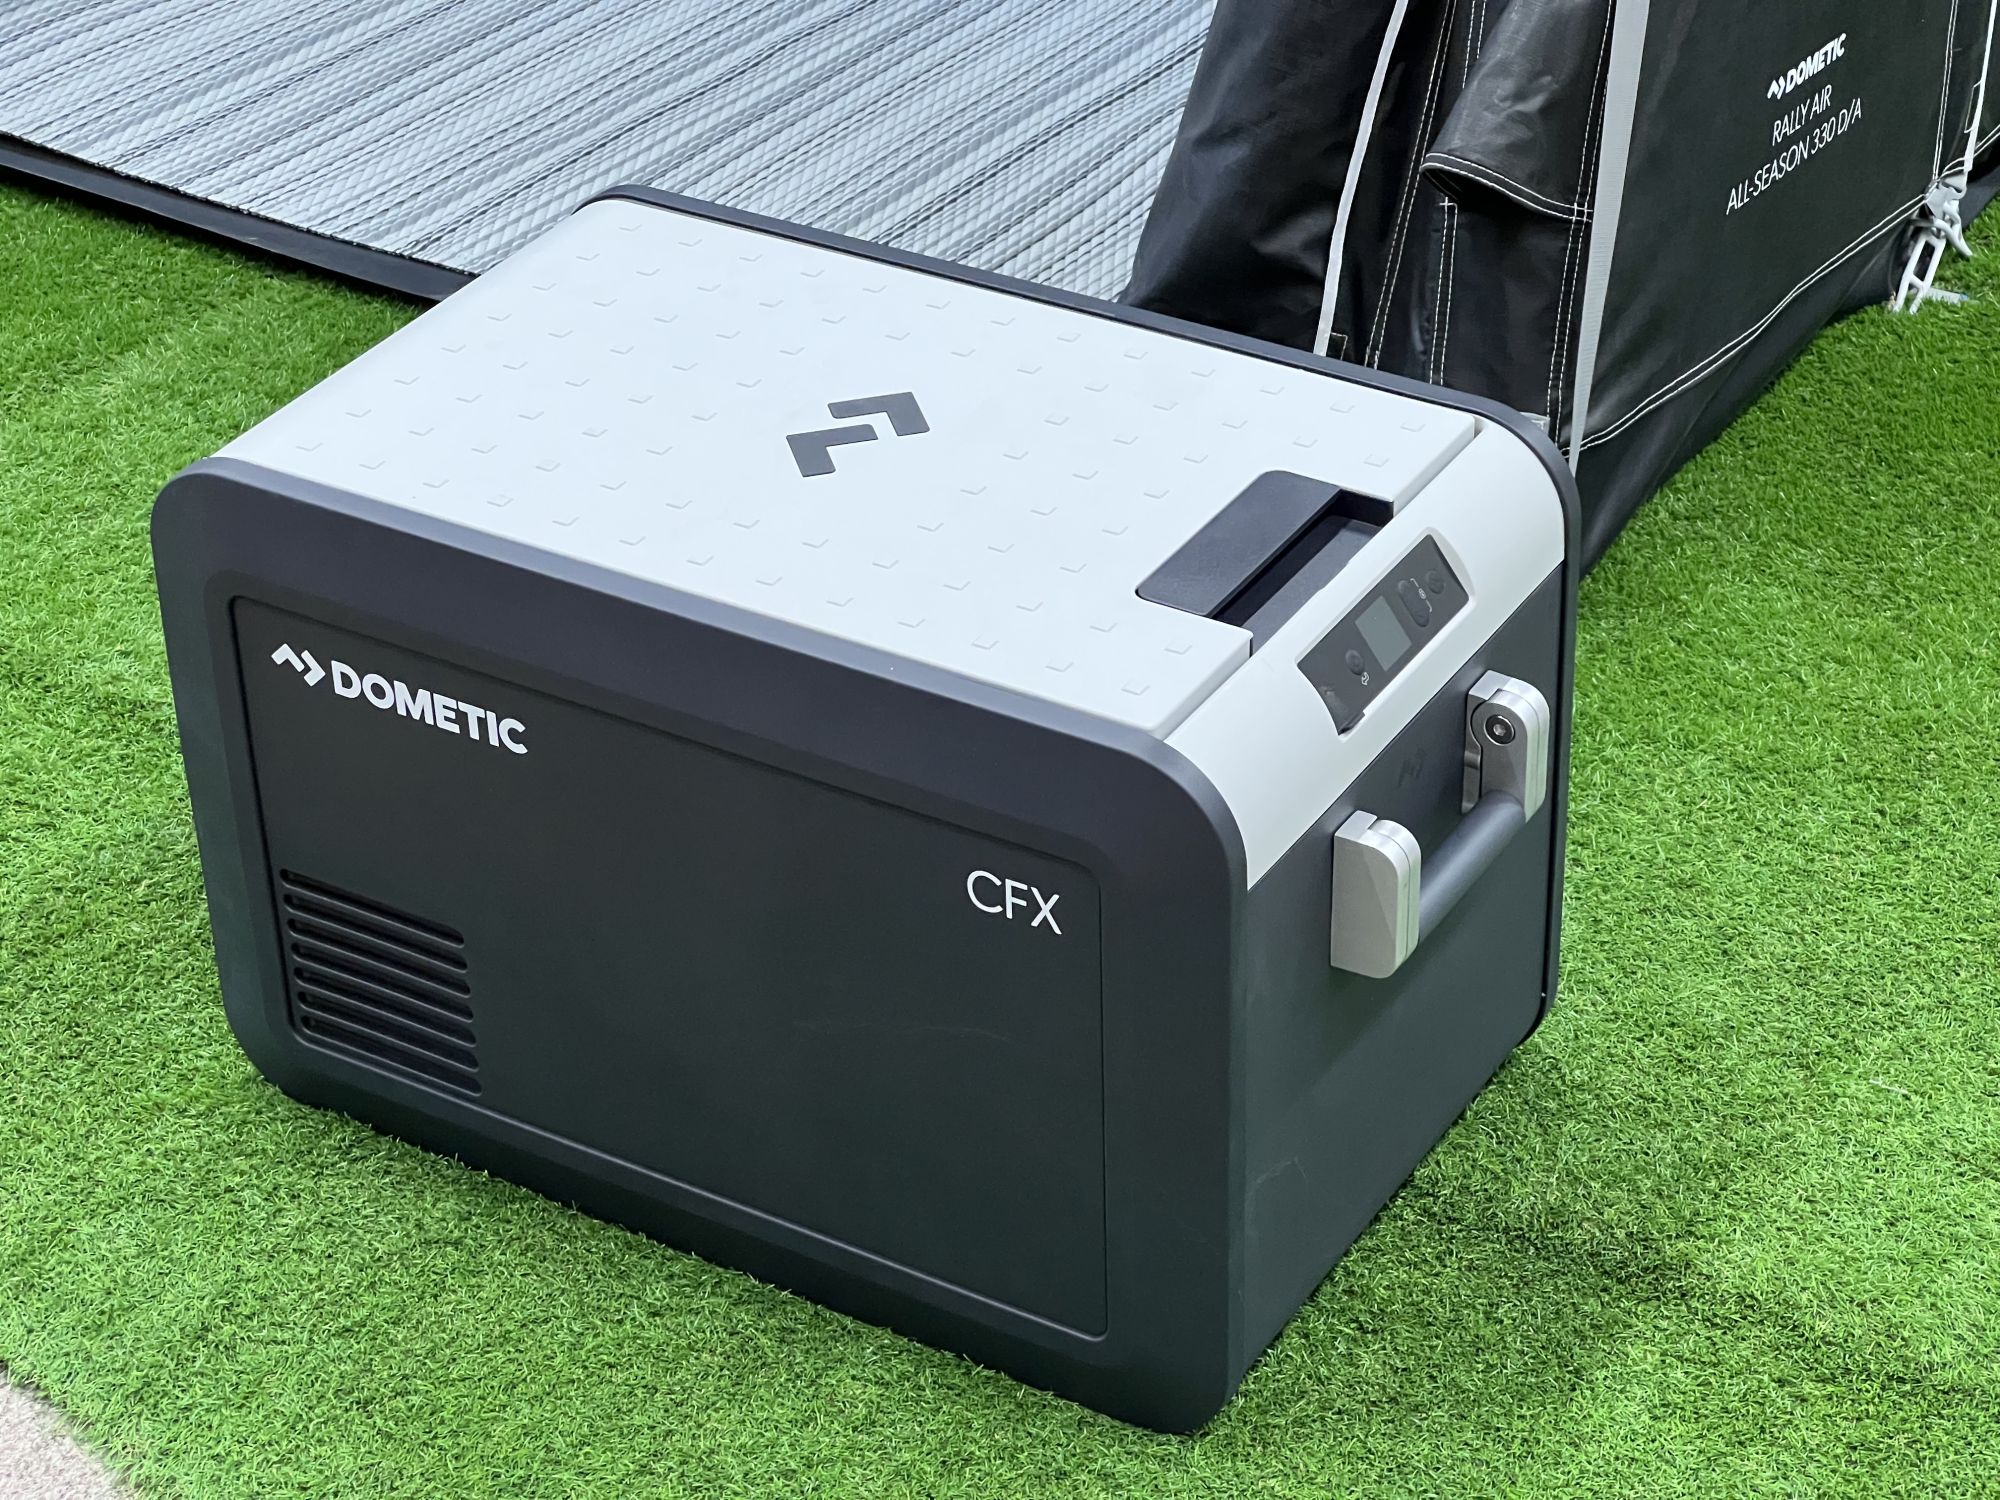 Dometic CFX3 35 ausprobiert: Mobile Kühlboxe mit App-Steuerung ›